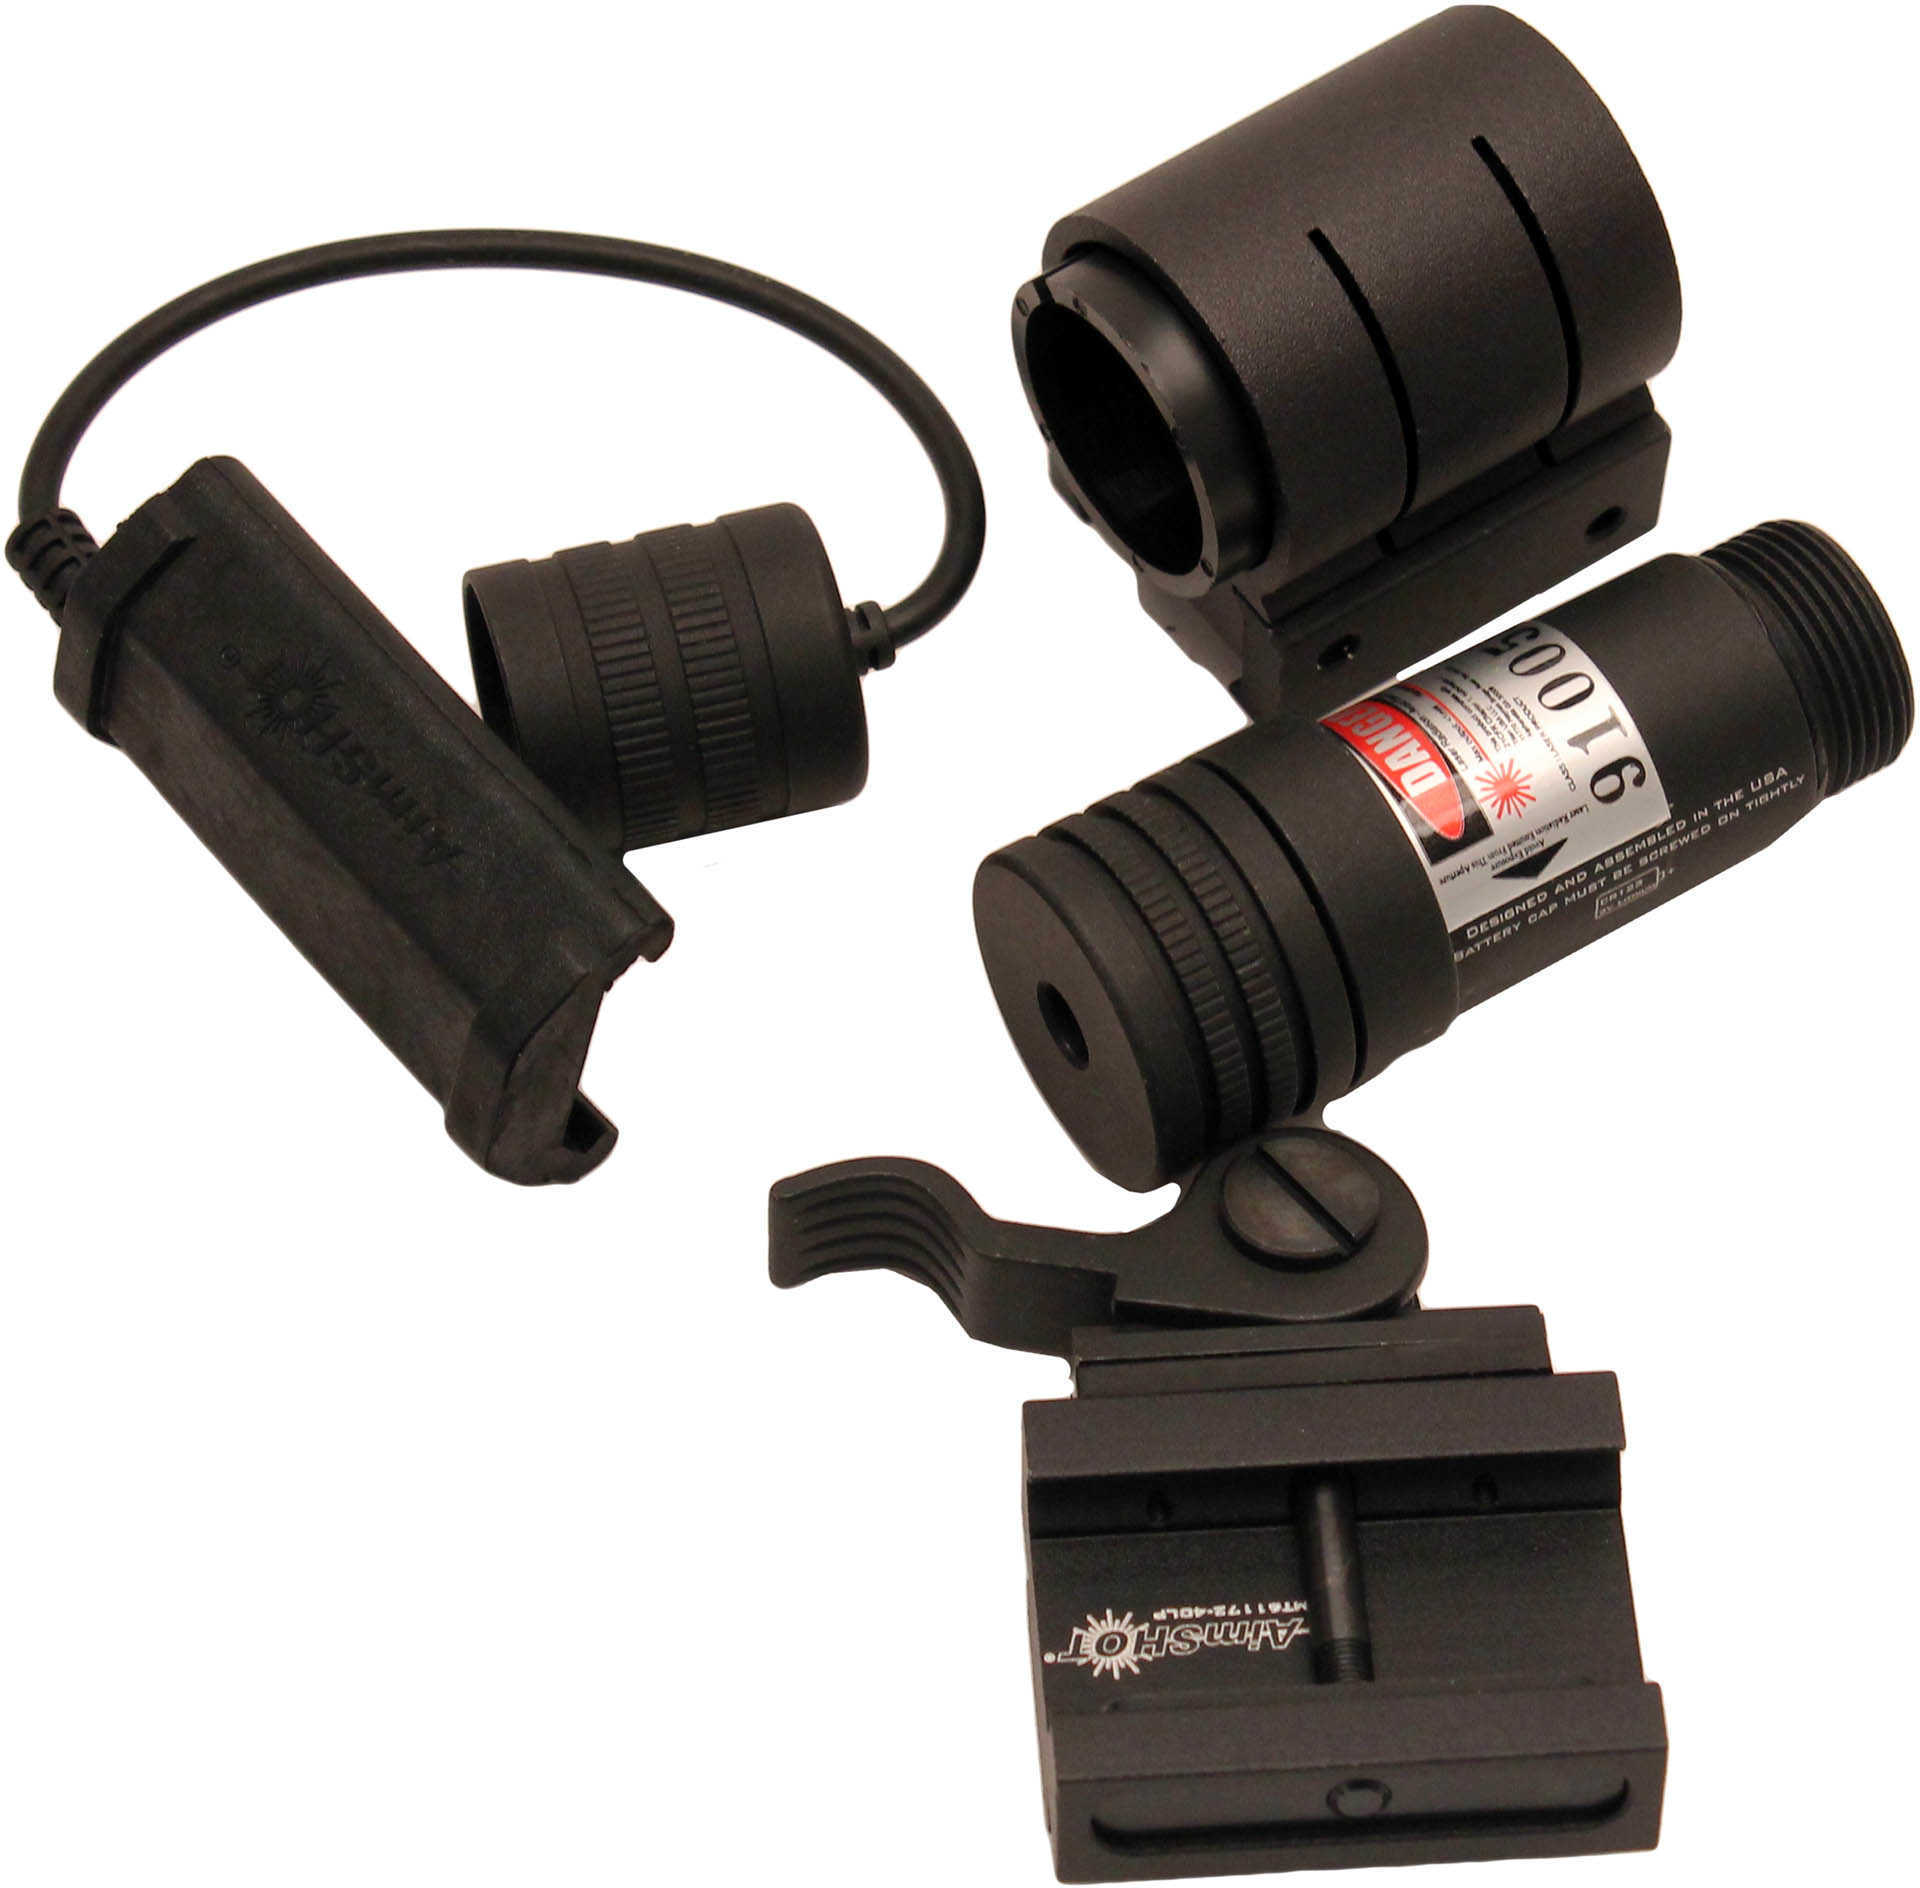 Aimshot Kt9172 Infrared Laser Sight Kit W/Qr Rail Mount